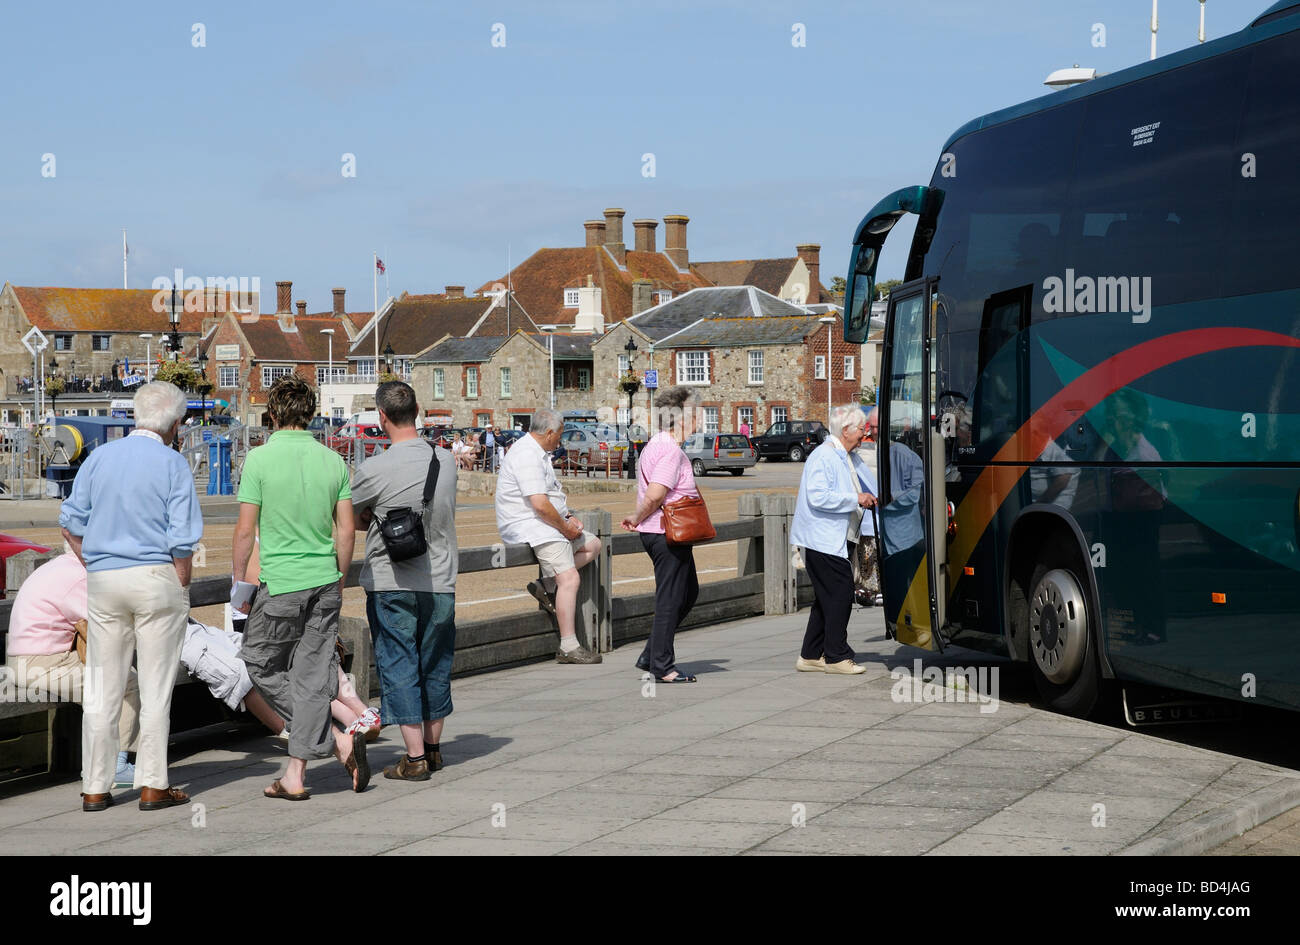 Les vacanciers à bord d'un autocar de vacances à Yarmouth Île de Wight Angleterre UK Banque D'Images